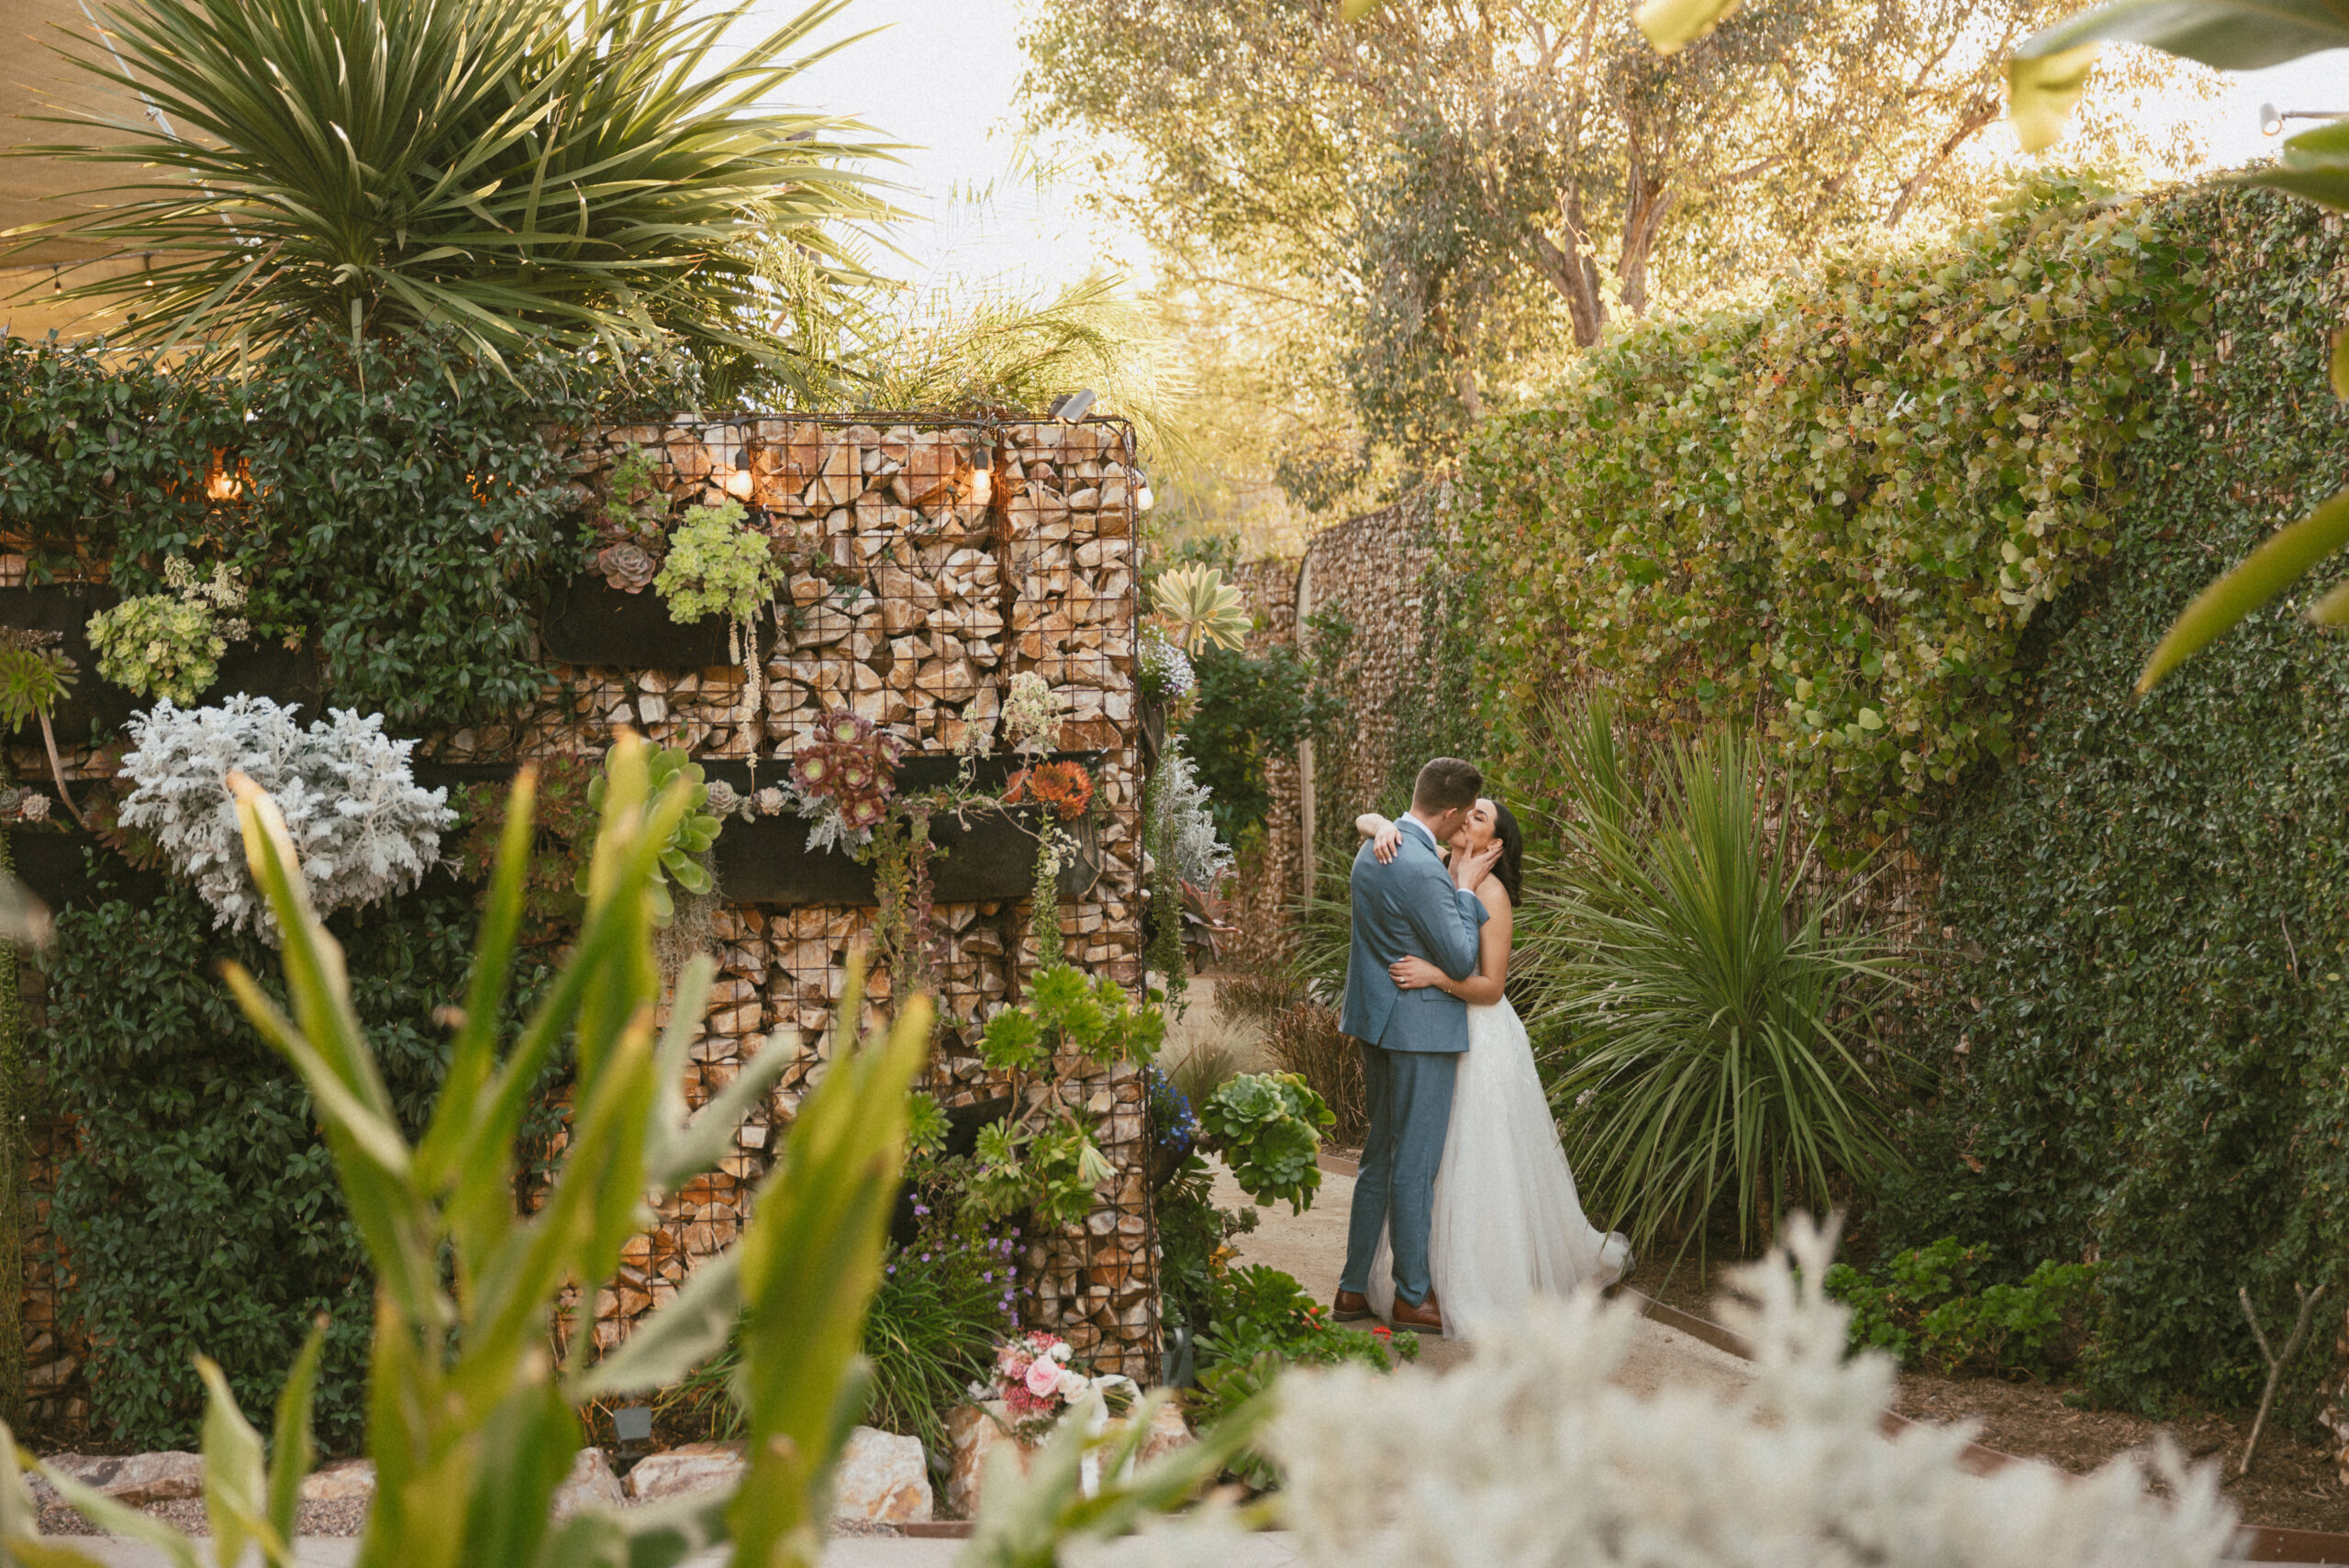 San Diego river garden wedding in california